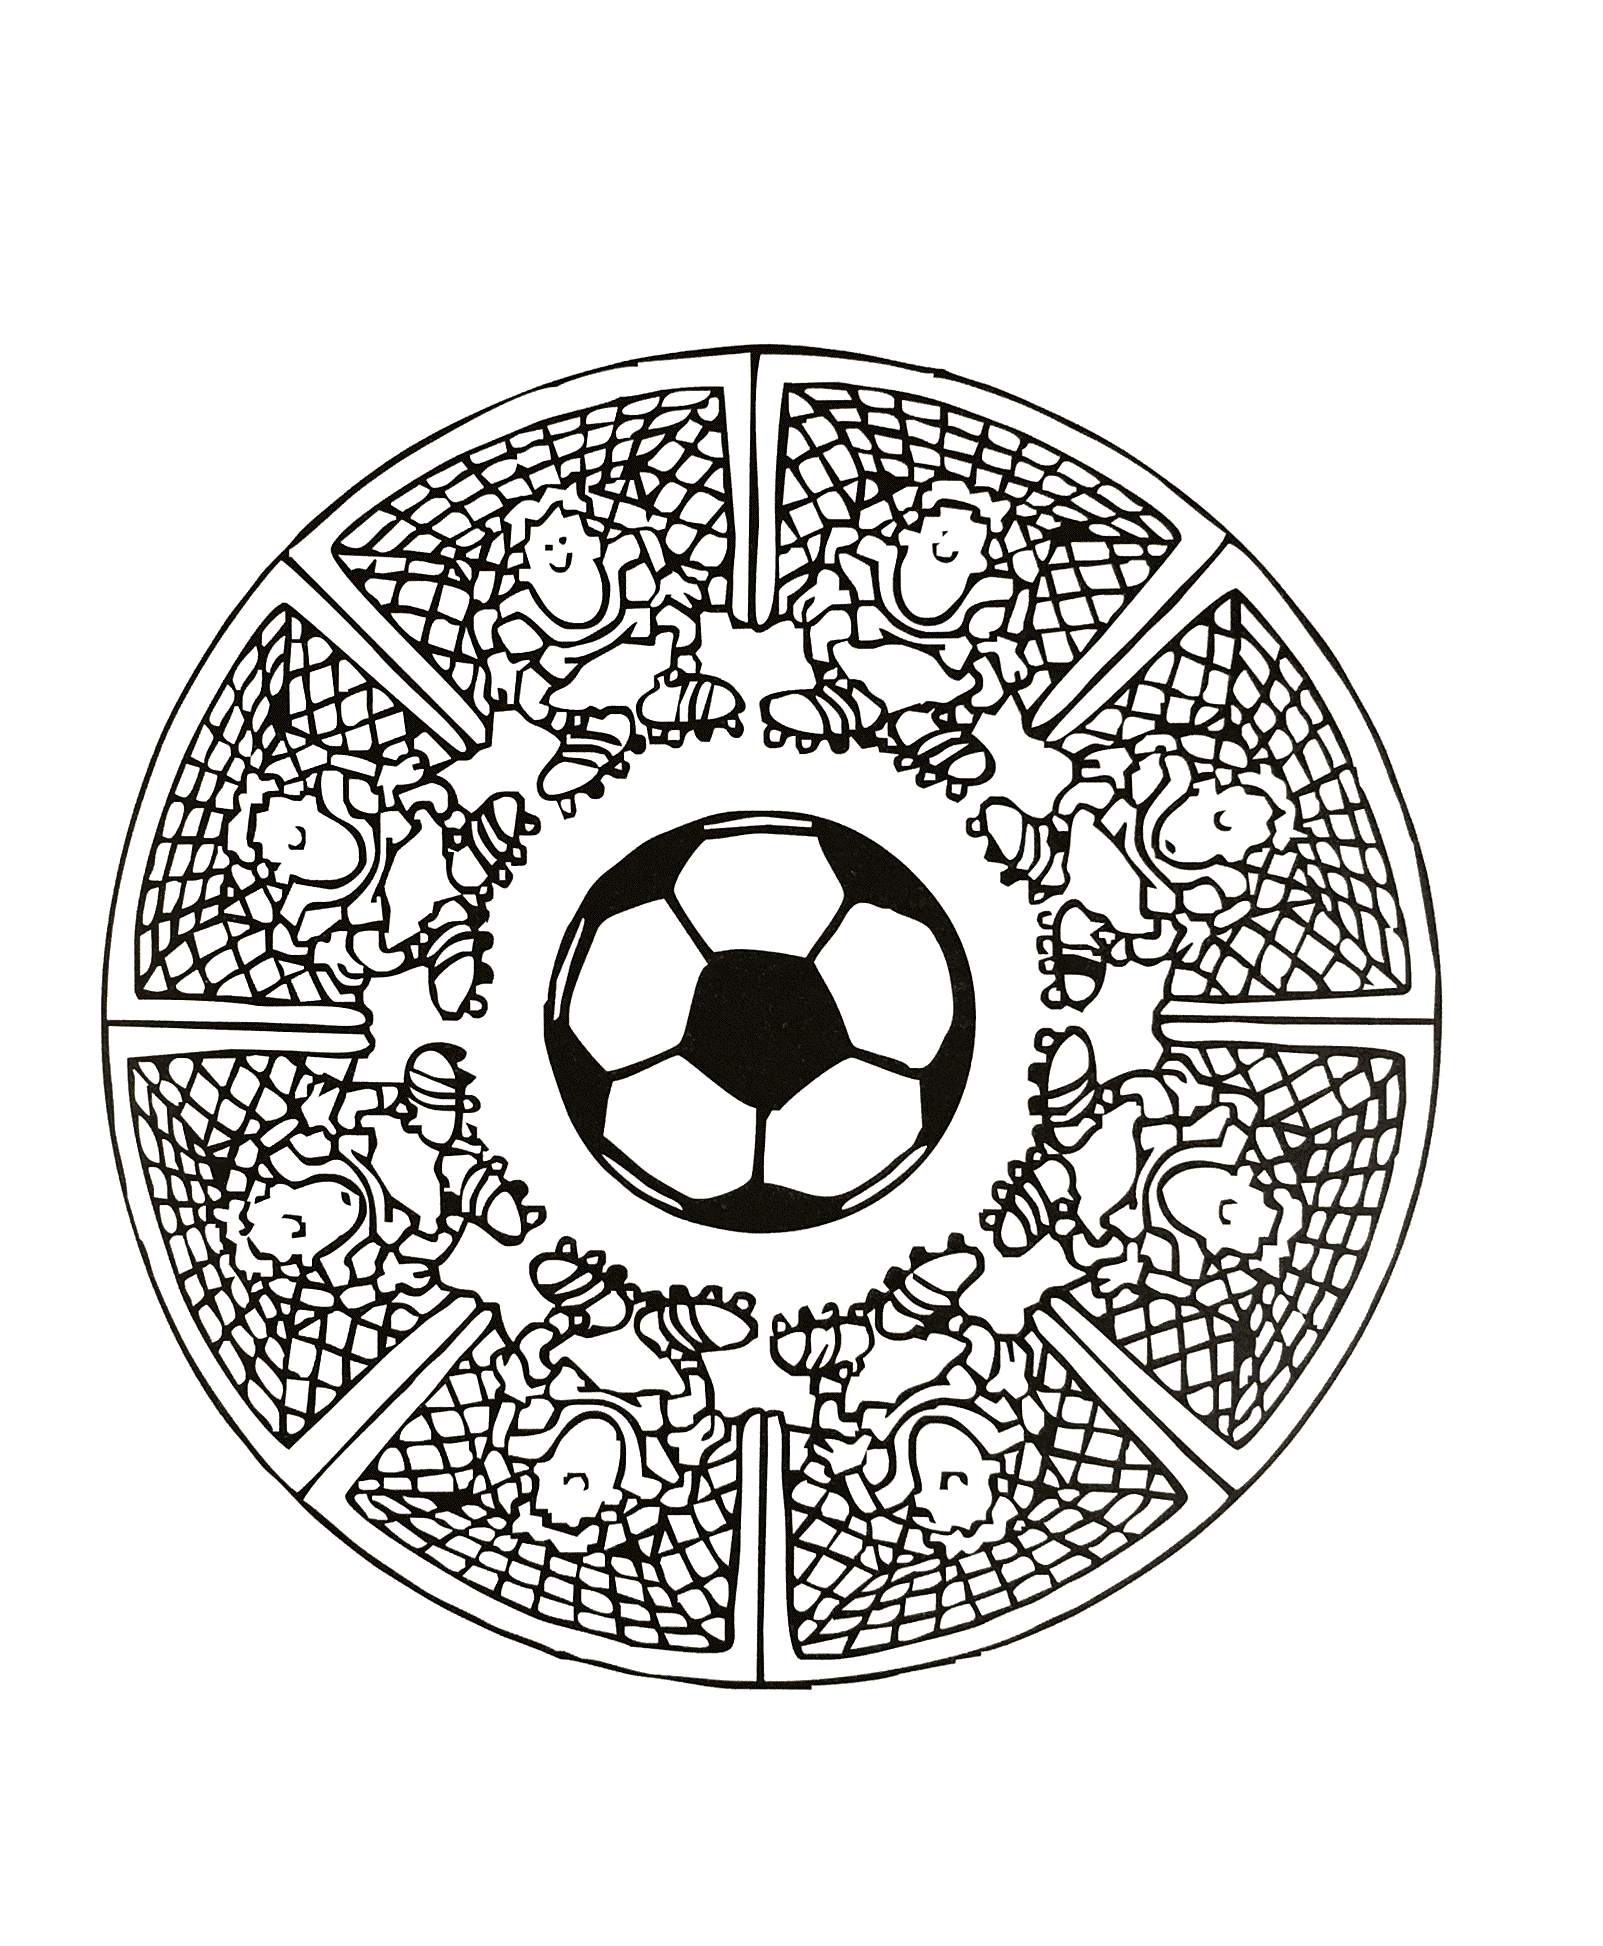 Mandala do futebol, ilustrando um gol, um homenzinho de chuteira e uma bola de futebol no centro.